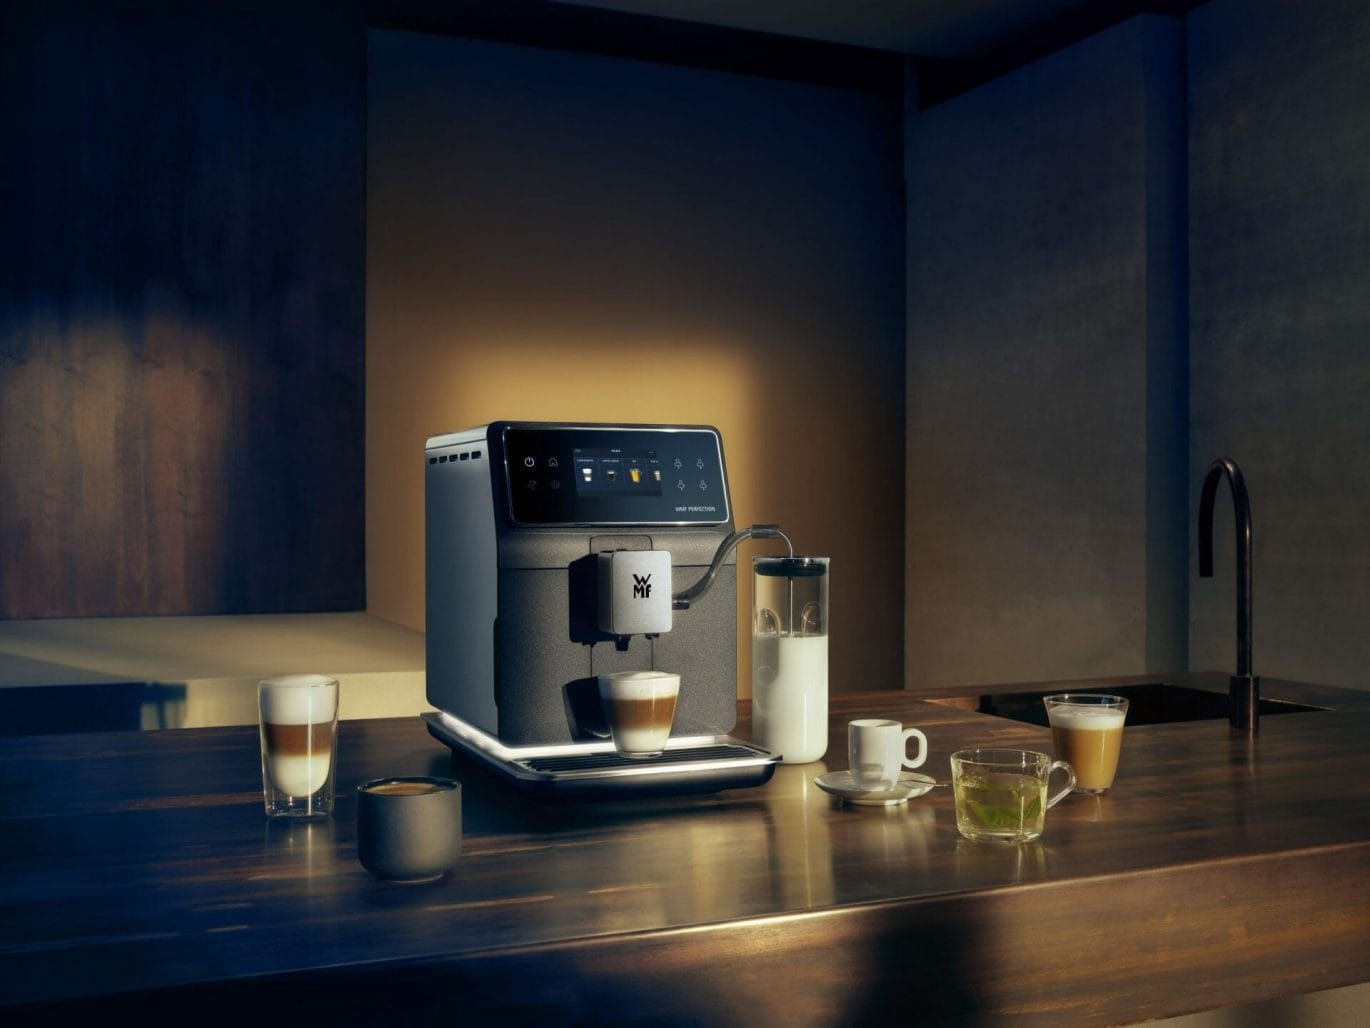 haai calorie zelf WMF ontwikkelt volautomatische koffiemachine voor thuis - Mixed Grill